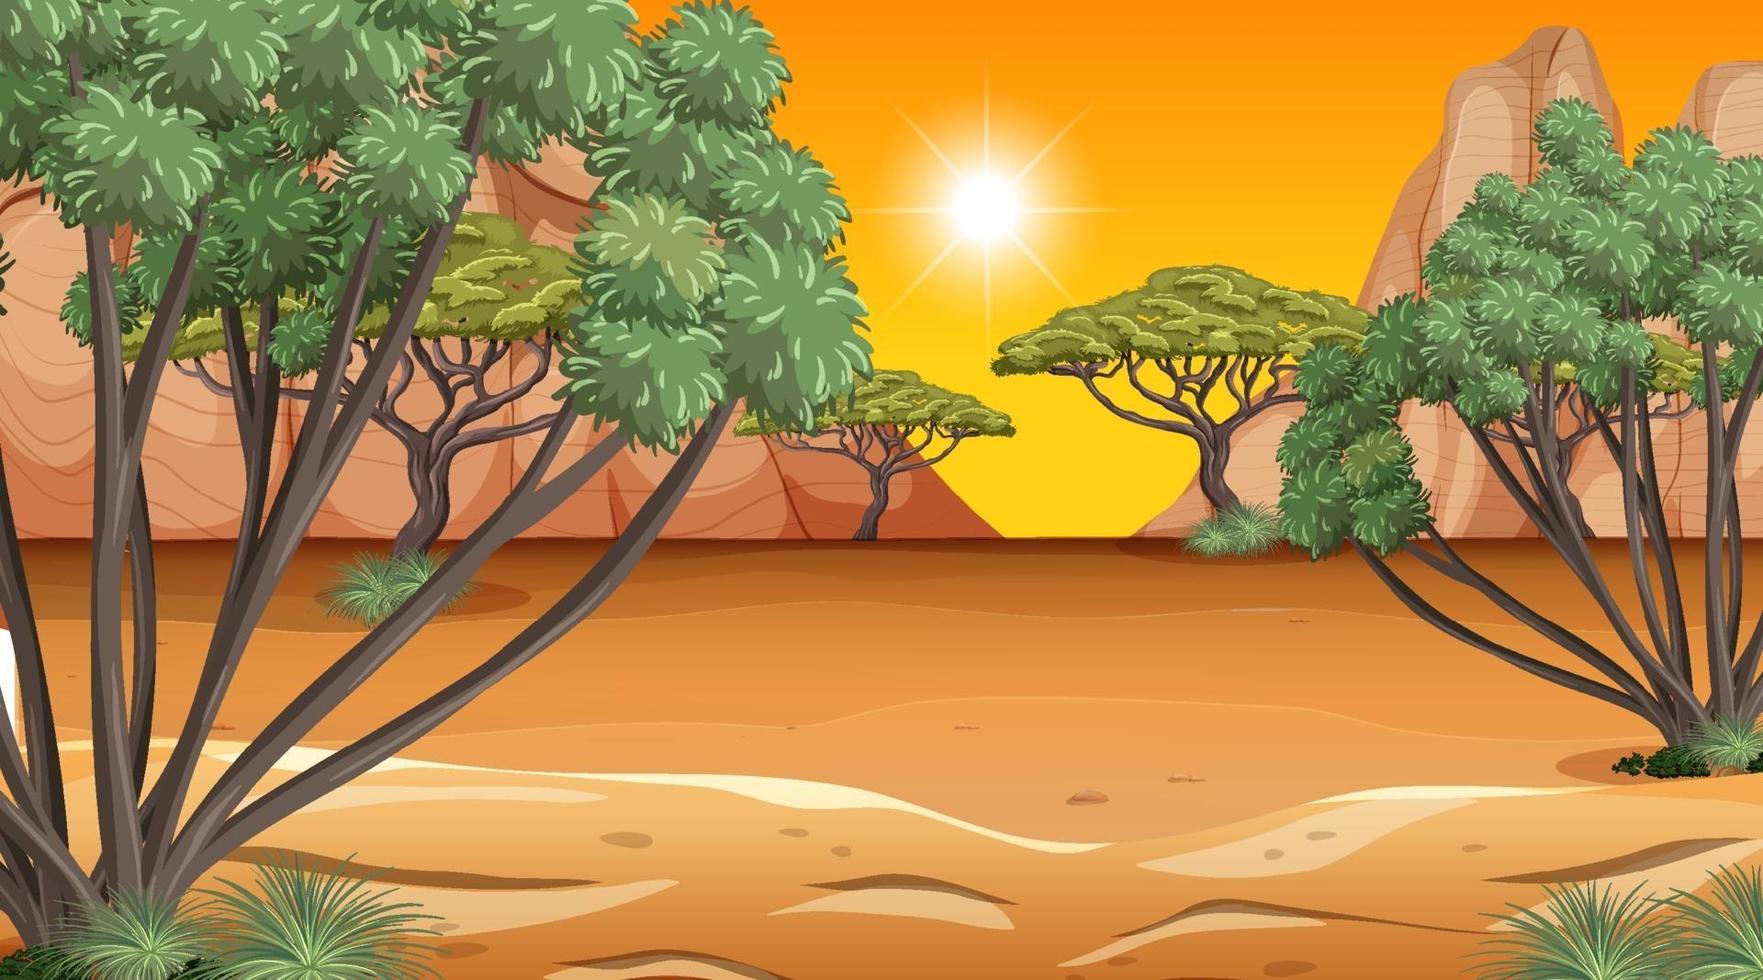 Afrikaanse savanne boslandschapsscène in zonsondergangtijd vector